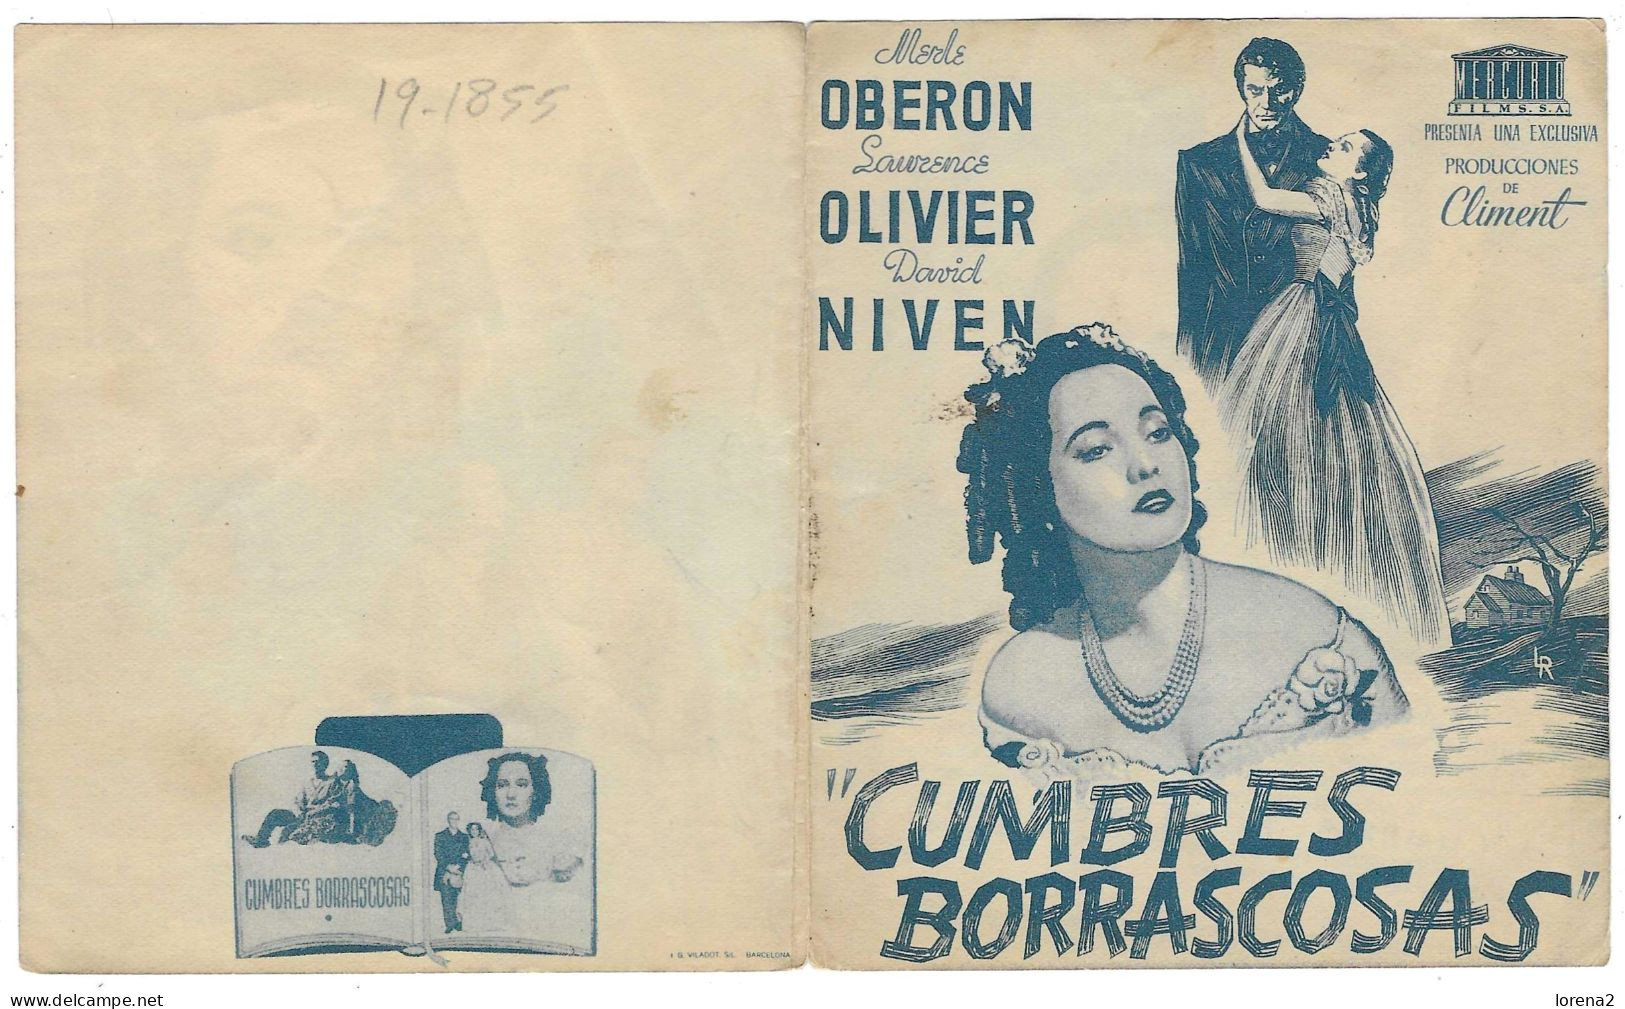 Programa Cine. Cumbres Borrascosas. Laurence Olivier. 19-1855 - Publicidad